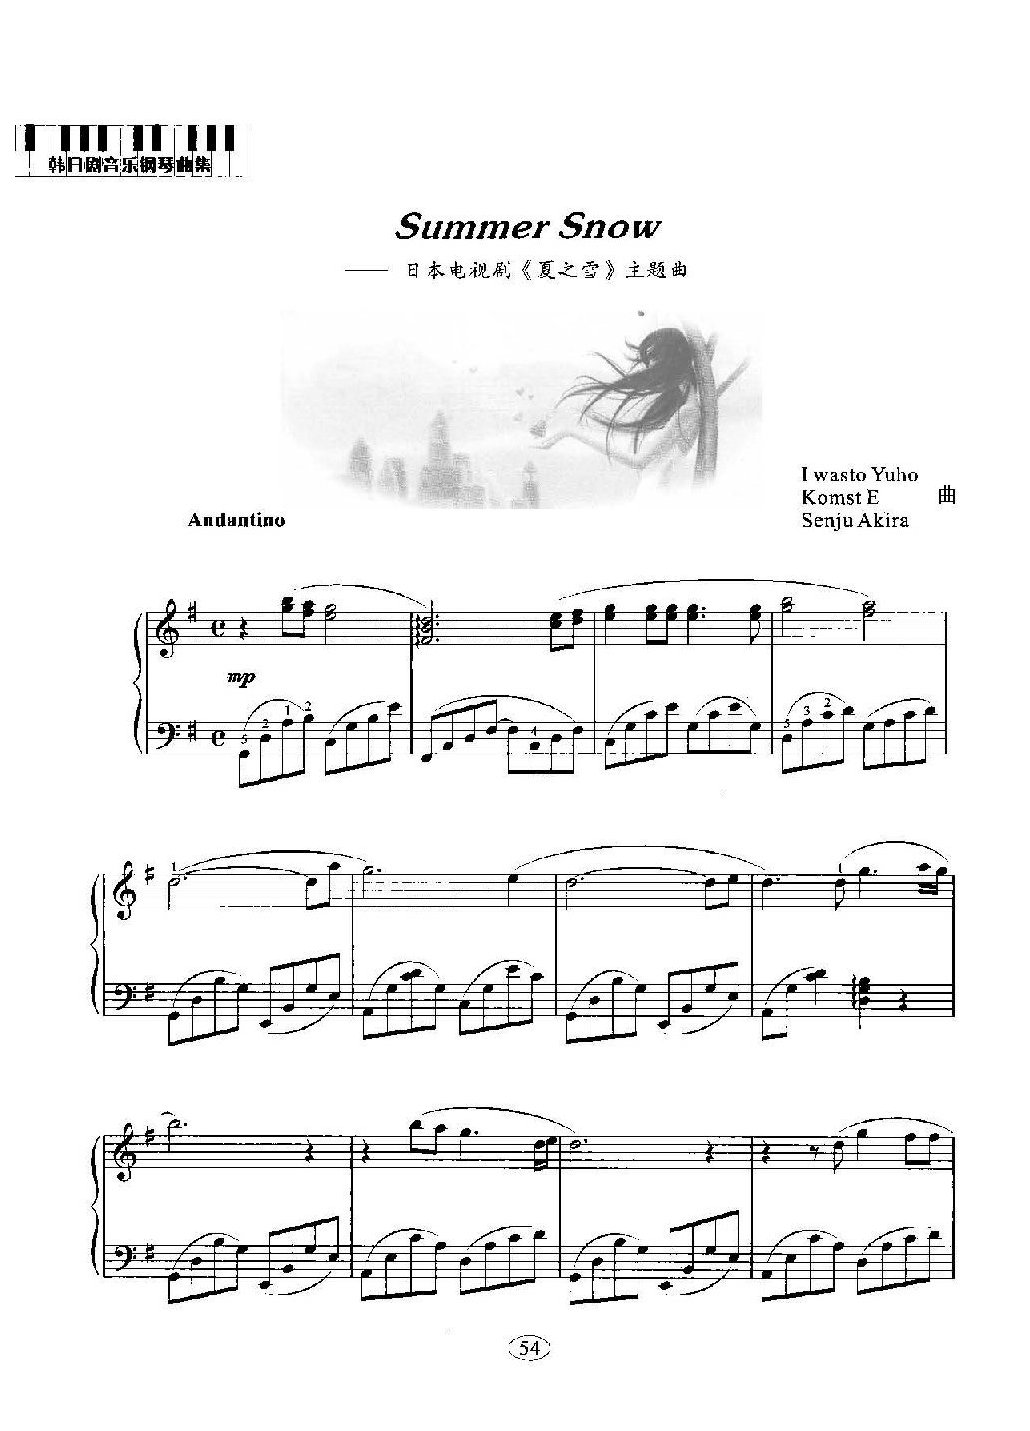 韩日剧音乐钢琴曲：Summer Snow 日本电视剧《夏之雪》主题曲